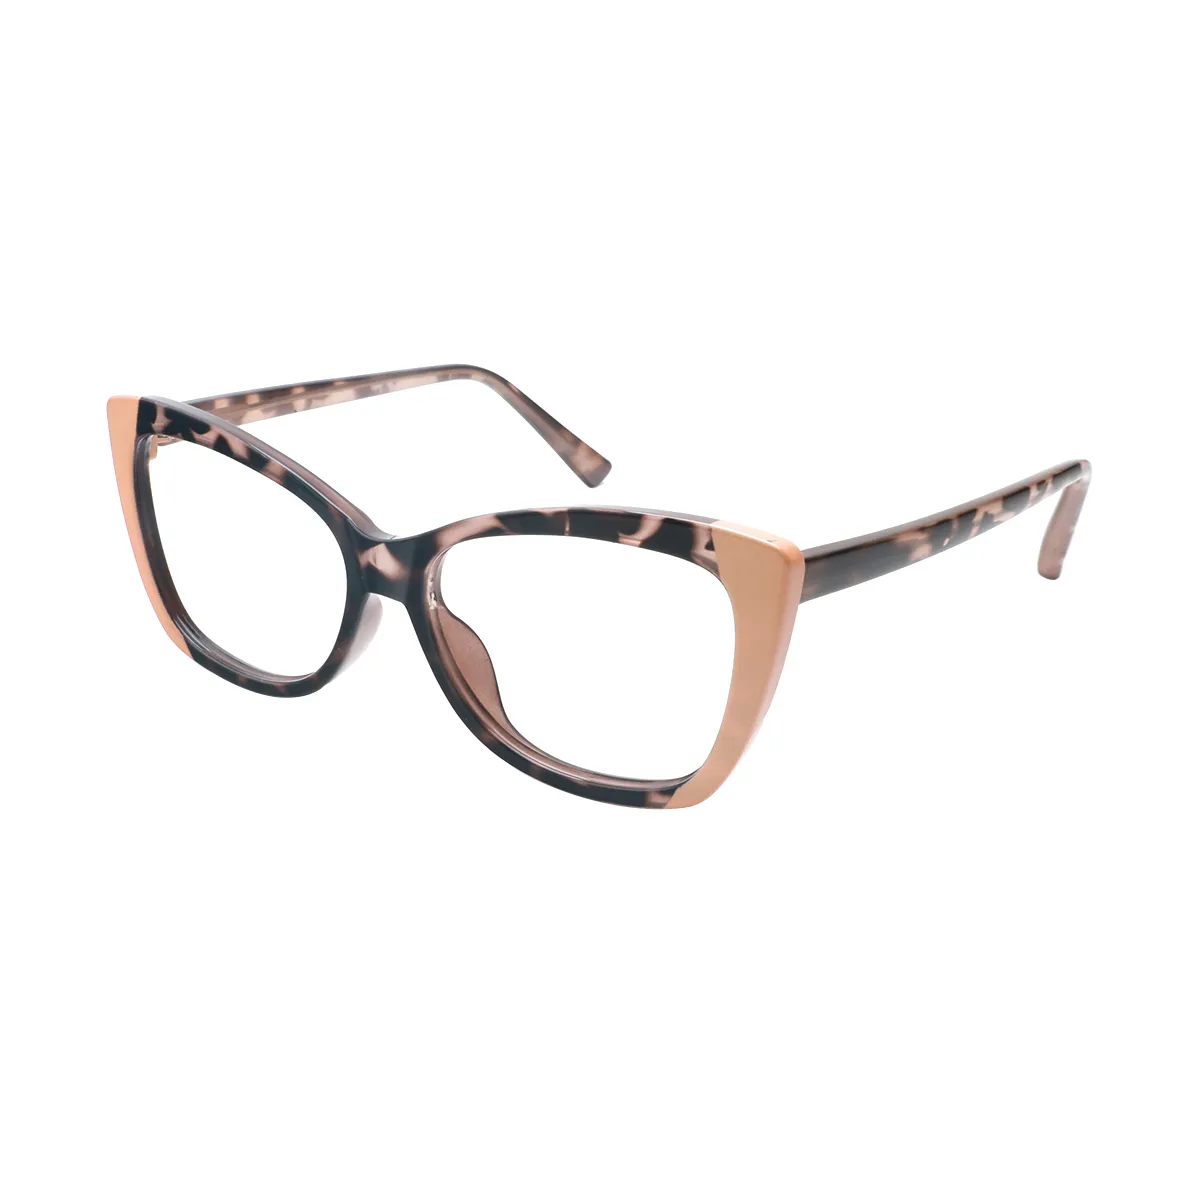 Devin - Cat-eye Brown Glasses for Women